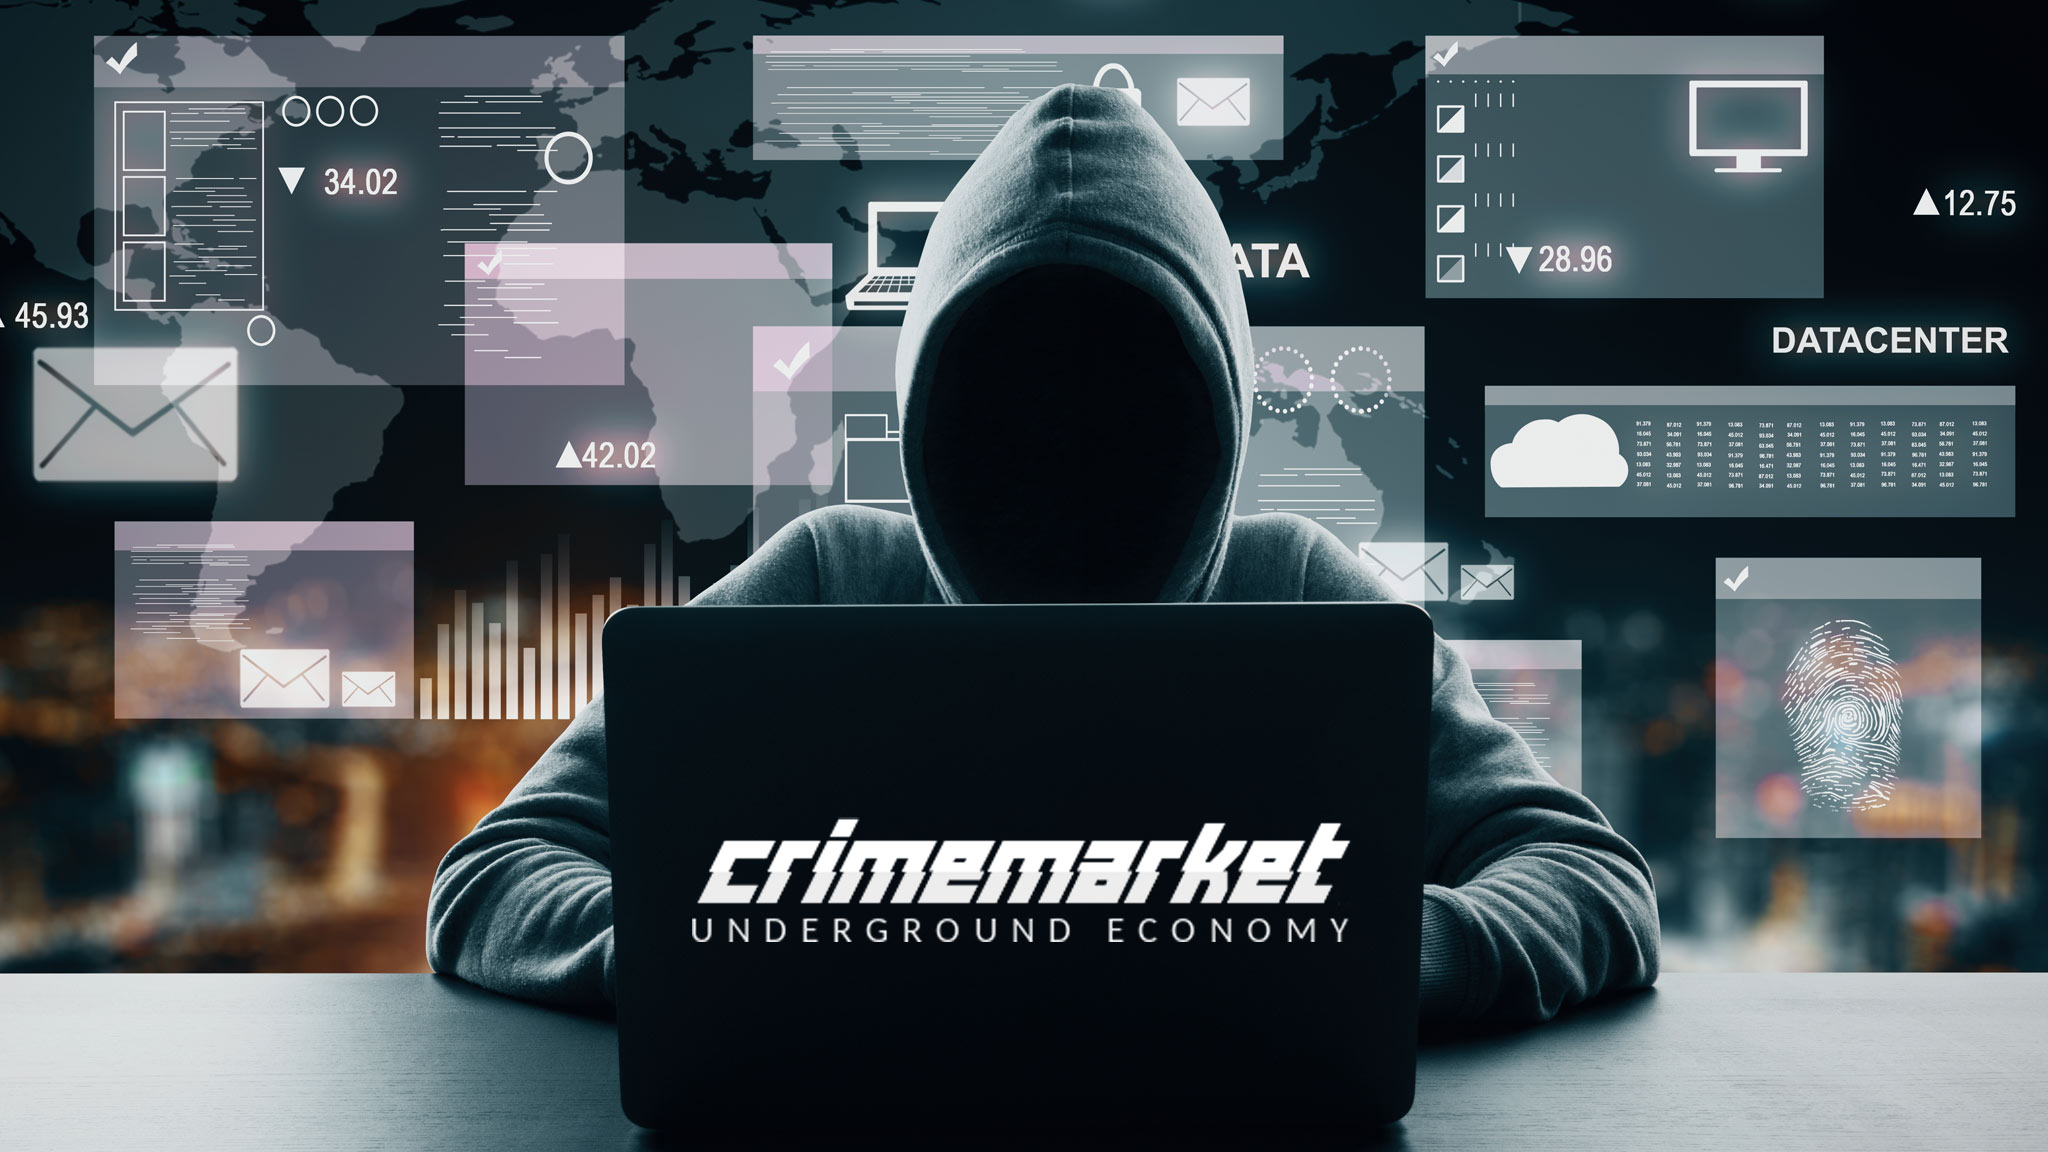 Polizei gelingt Schlag gegen kriminelle Handelsplattform im Internet